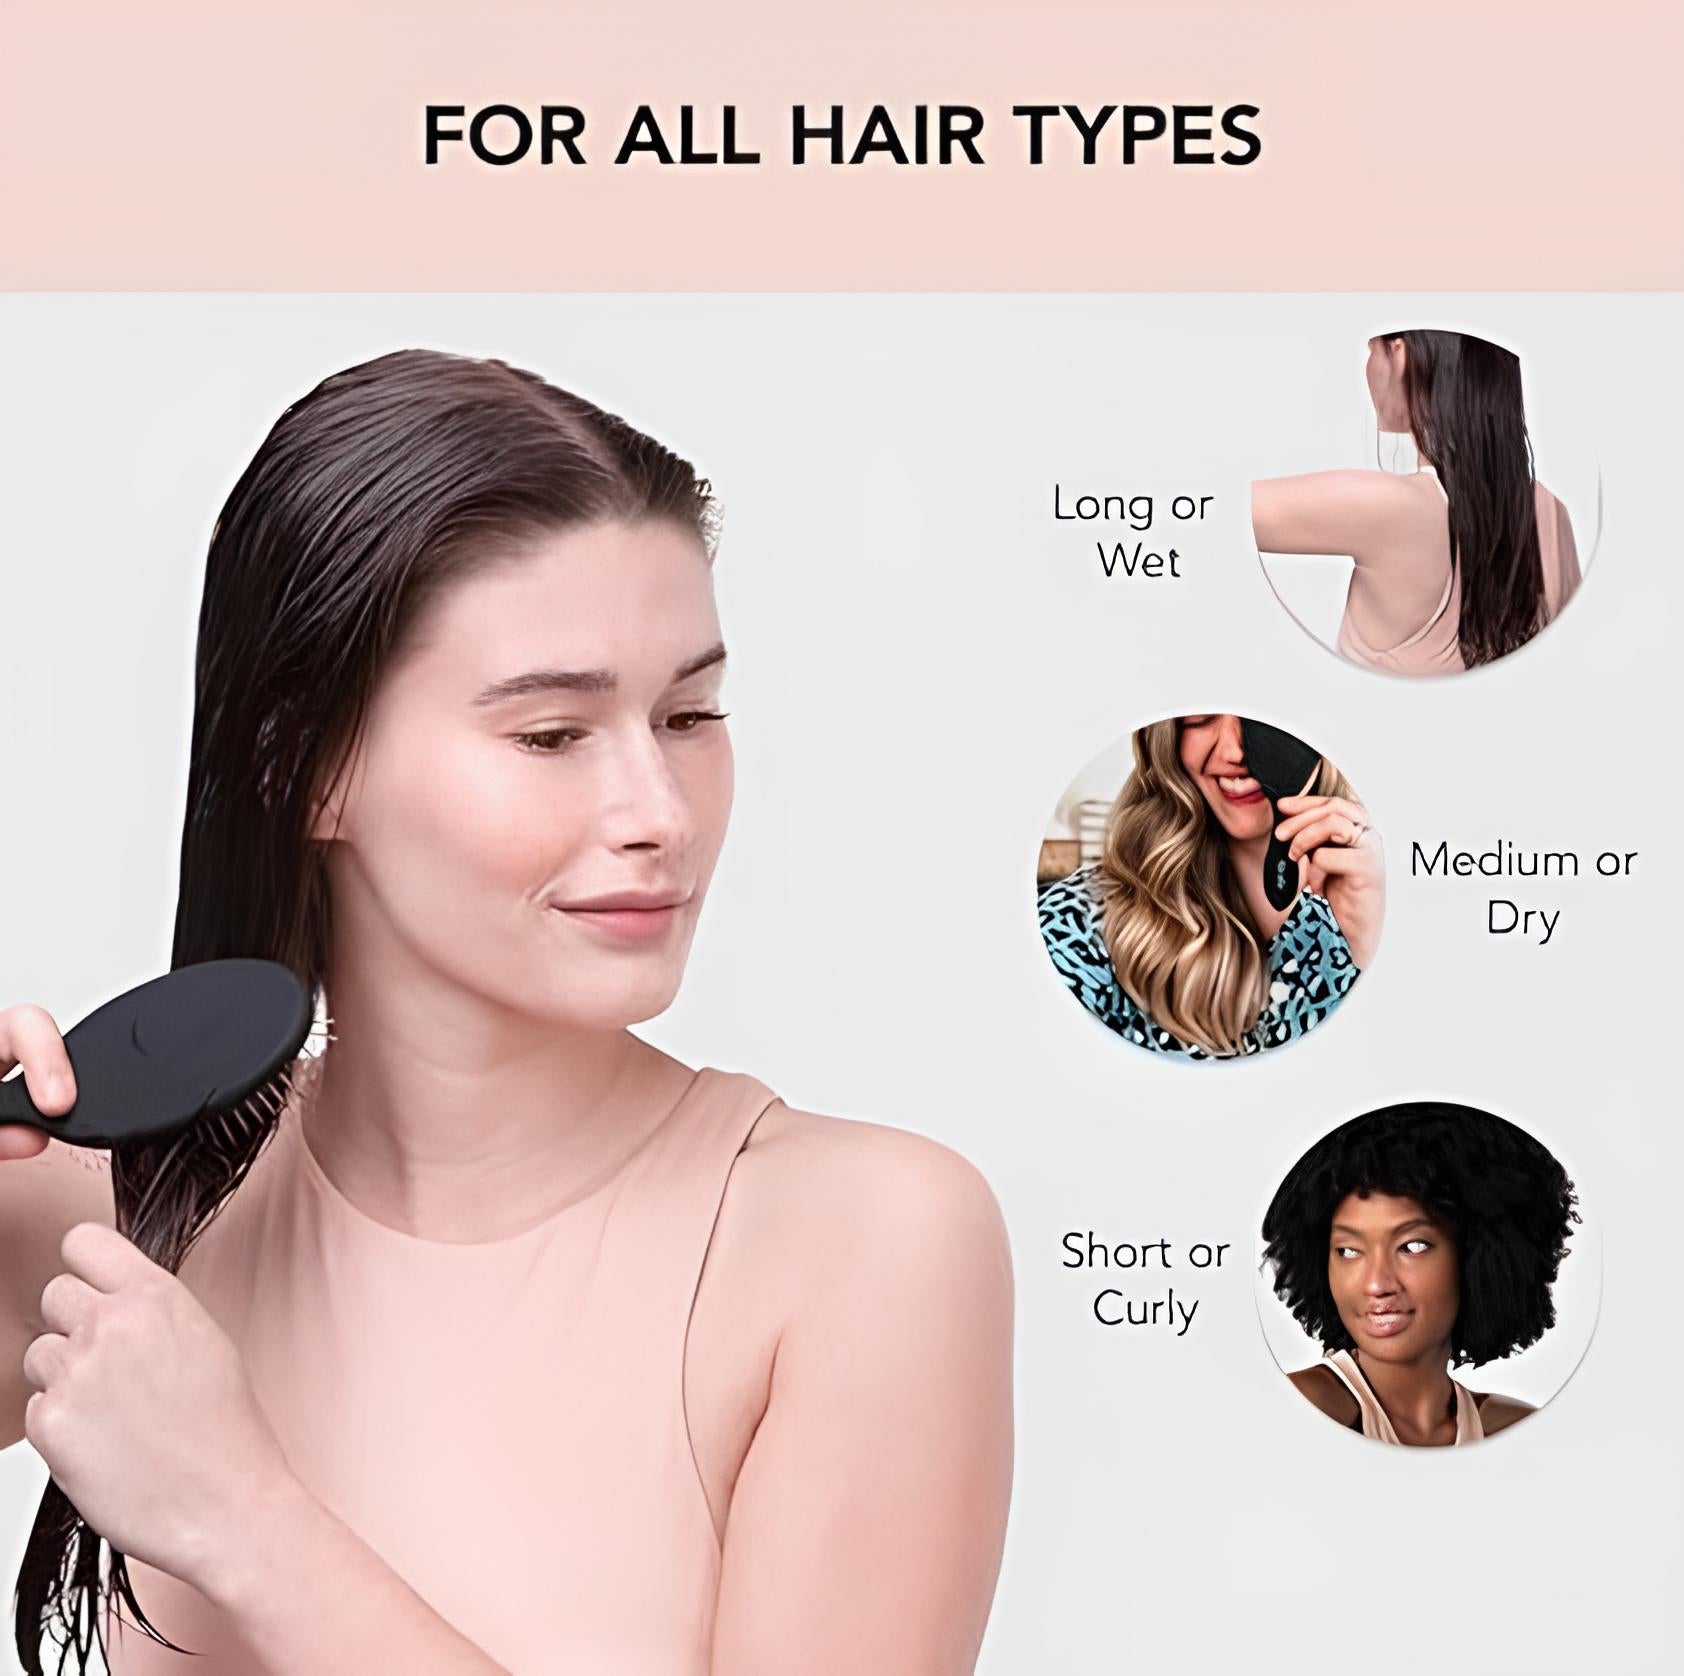 Hector Professional Hair Brush Detangling Brush - Soft Bristle Hair Brushes for Women | Straight & Curly Wet Dry Brush | Hairbrush Women for All Hair Types | Hair Detangler Brush | Travel Brush (Black, 1 Pc)